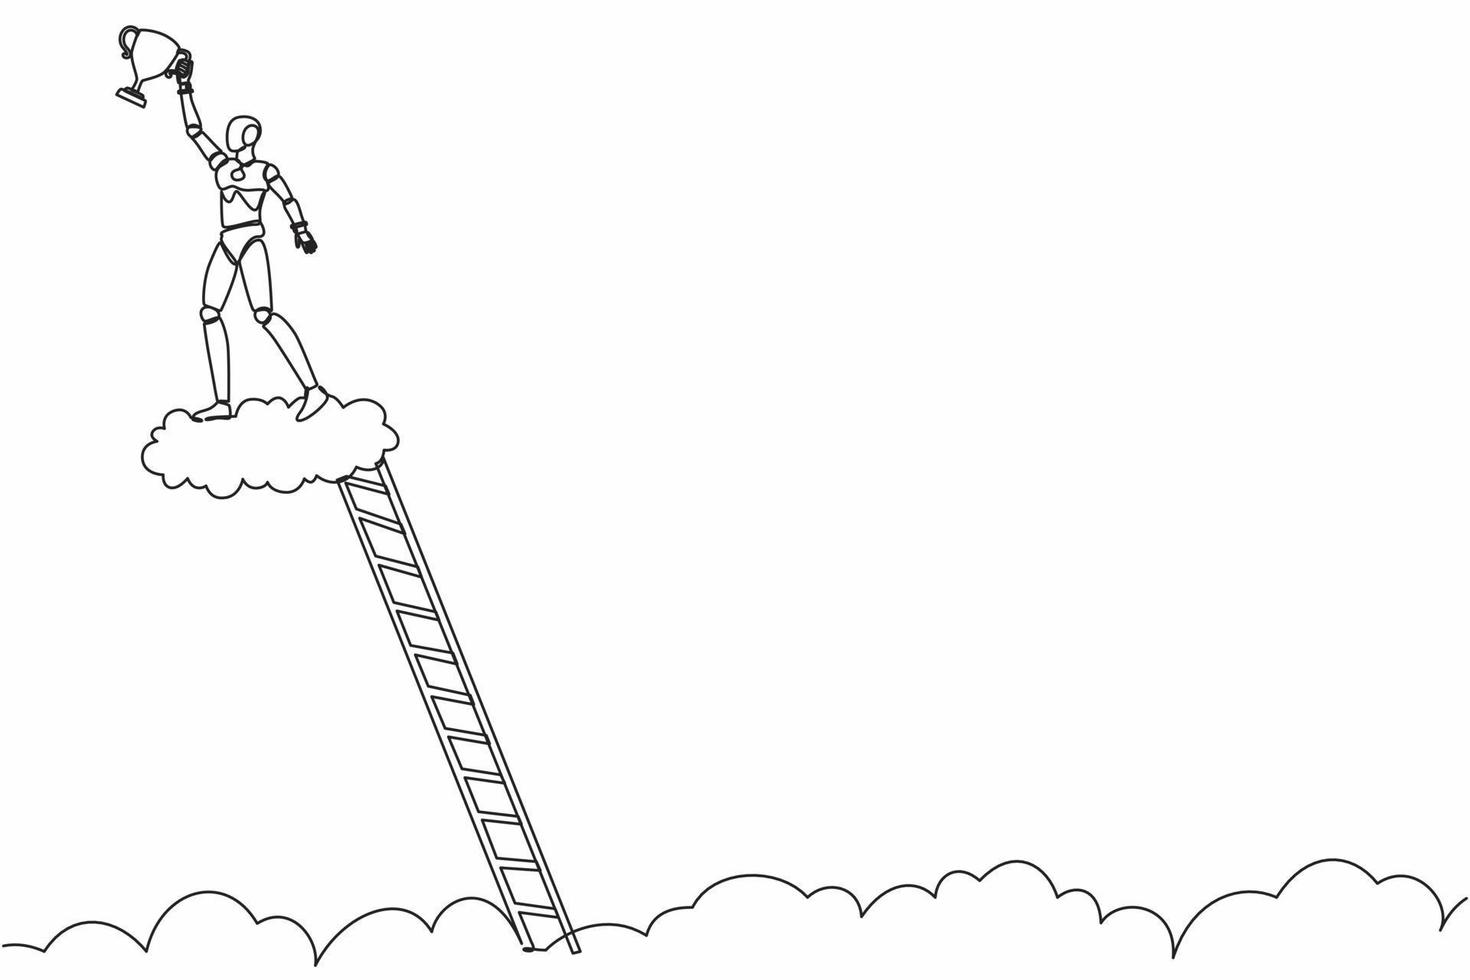 kontinuerlig en rad ritning robot klättra stege och hålla trofé i molnet. visar priset firar sin seger i himlen. humanoid robot cybernetisk organism. enkel rad rita design vektorillustration vektor